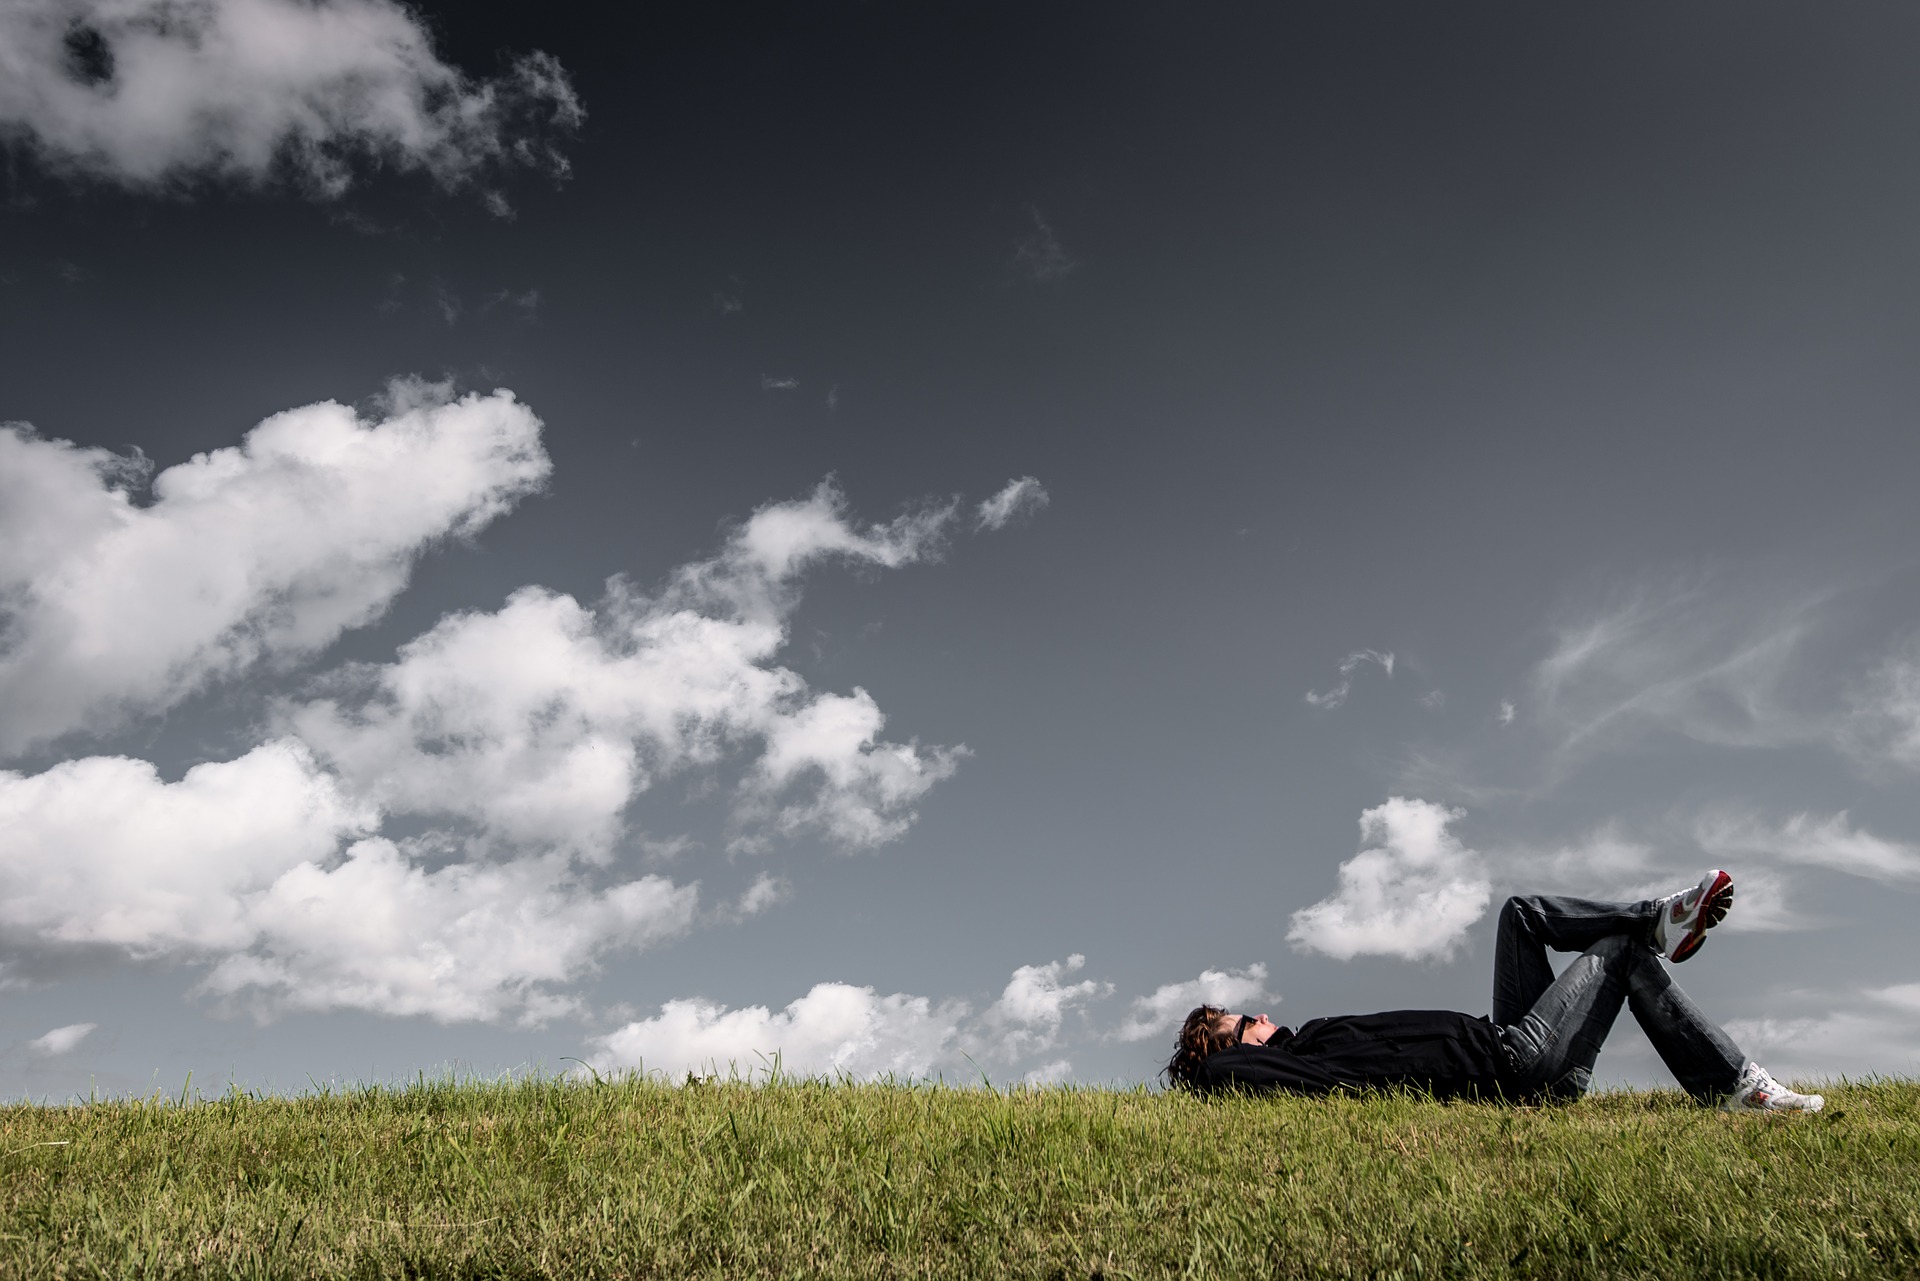 嘘つきで有名なパチンカスの男性が芝生で寝っ転がっている画像